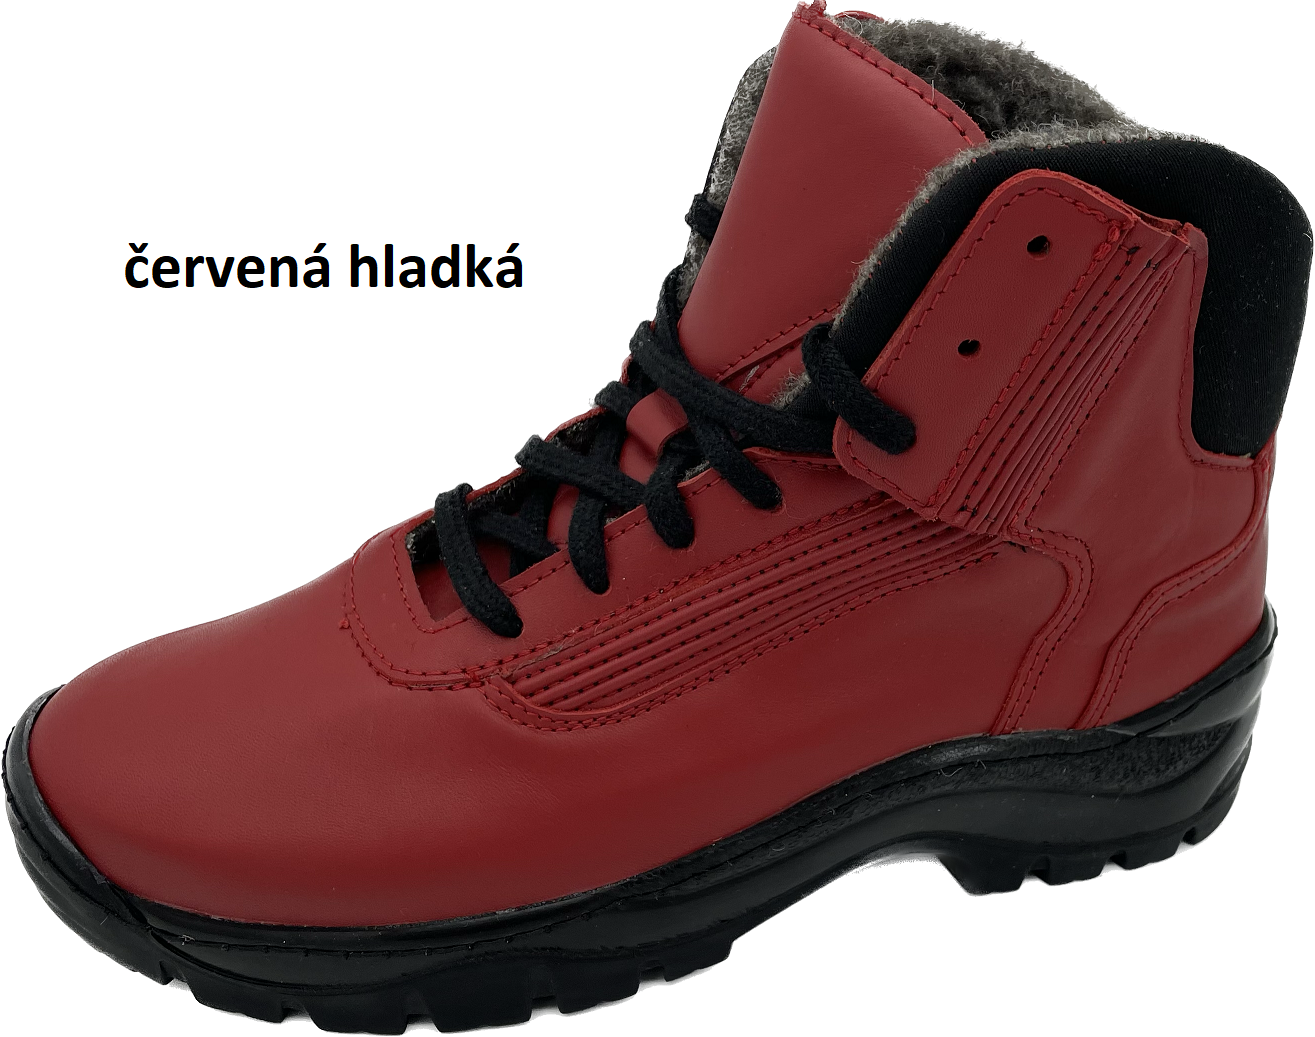 Boty Hanák TREKING Barva usně: červená hladká, Velikosti obuvi: 47